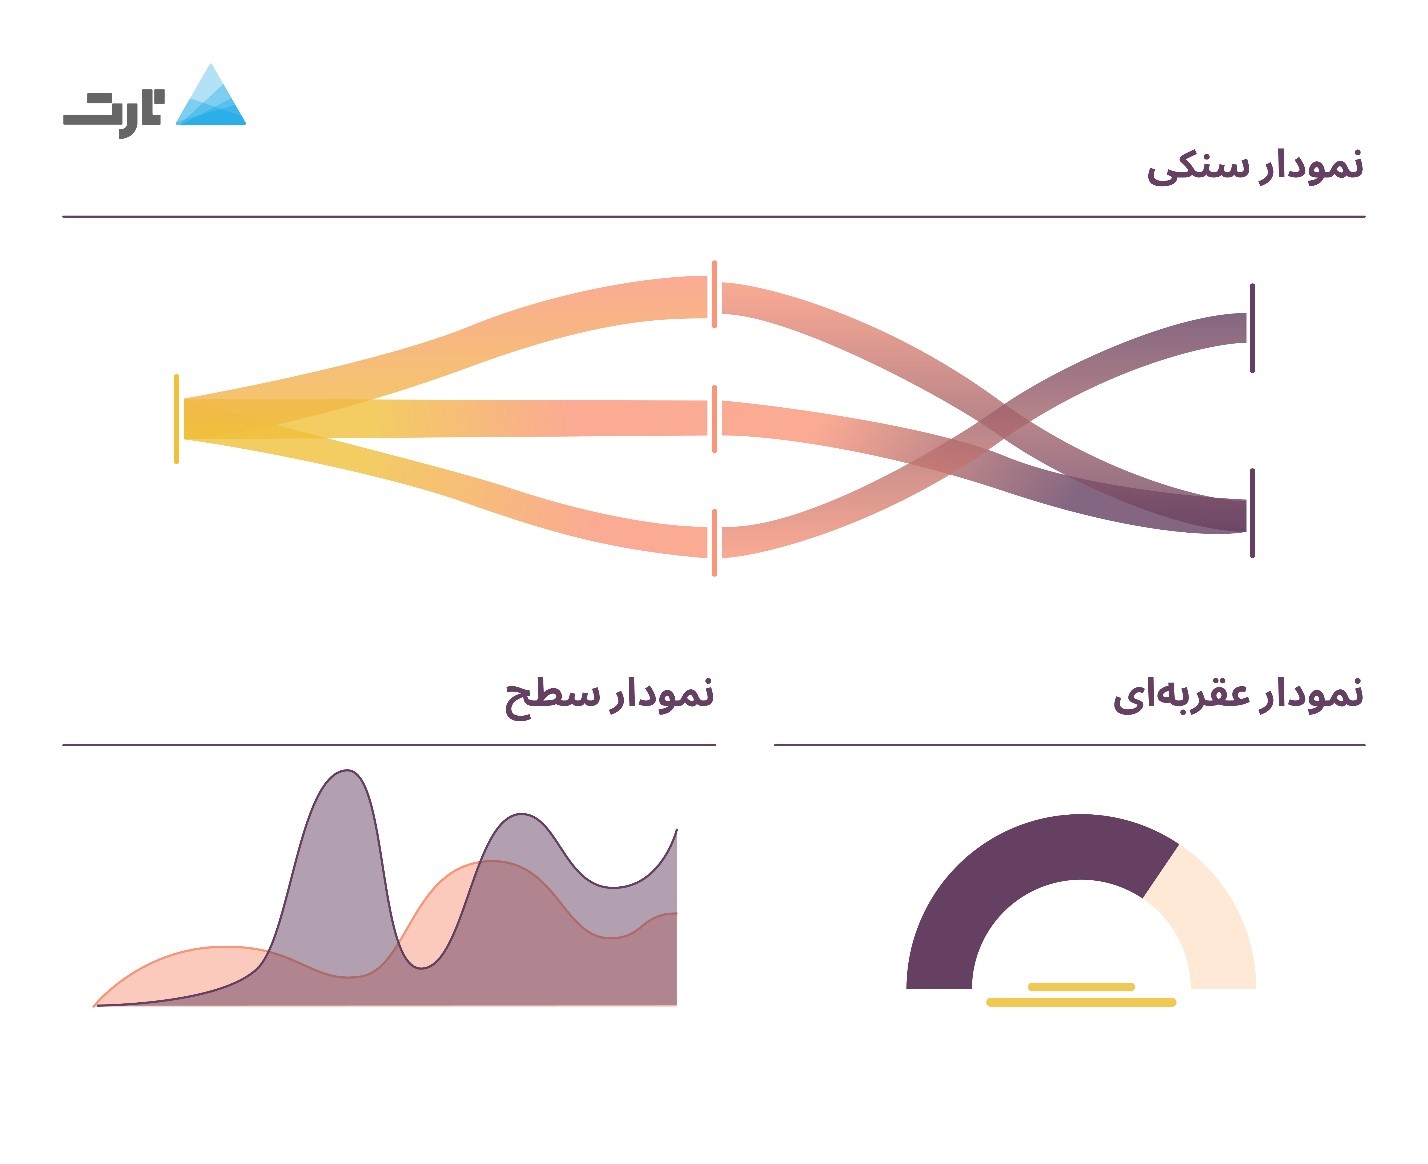 نمودارهای تارت - ابزار مصورسازی داده برای داستان سرایی با داده